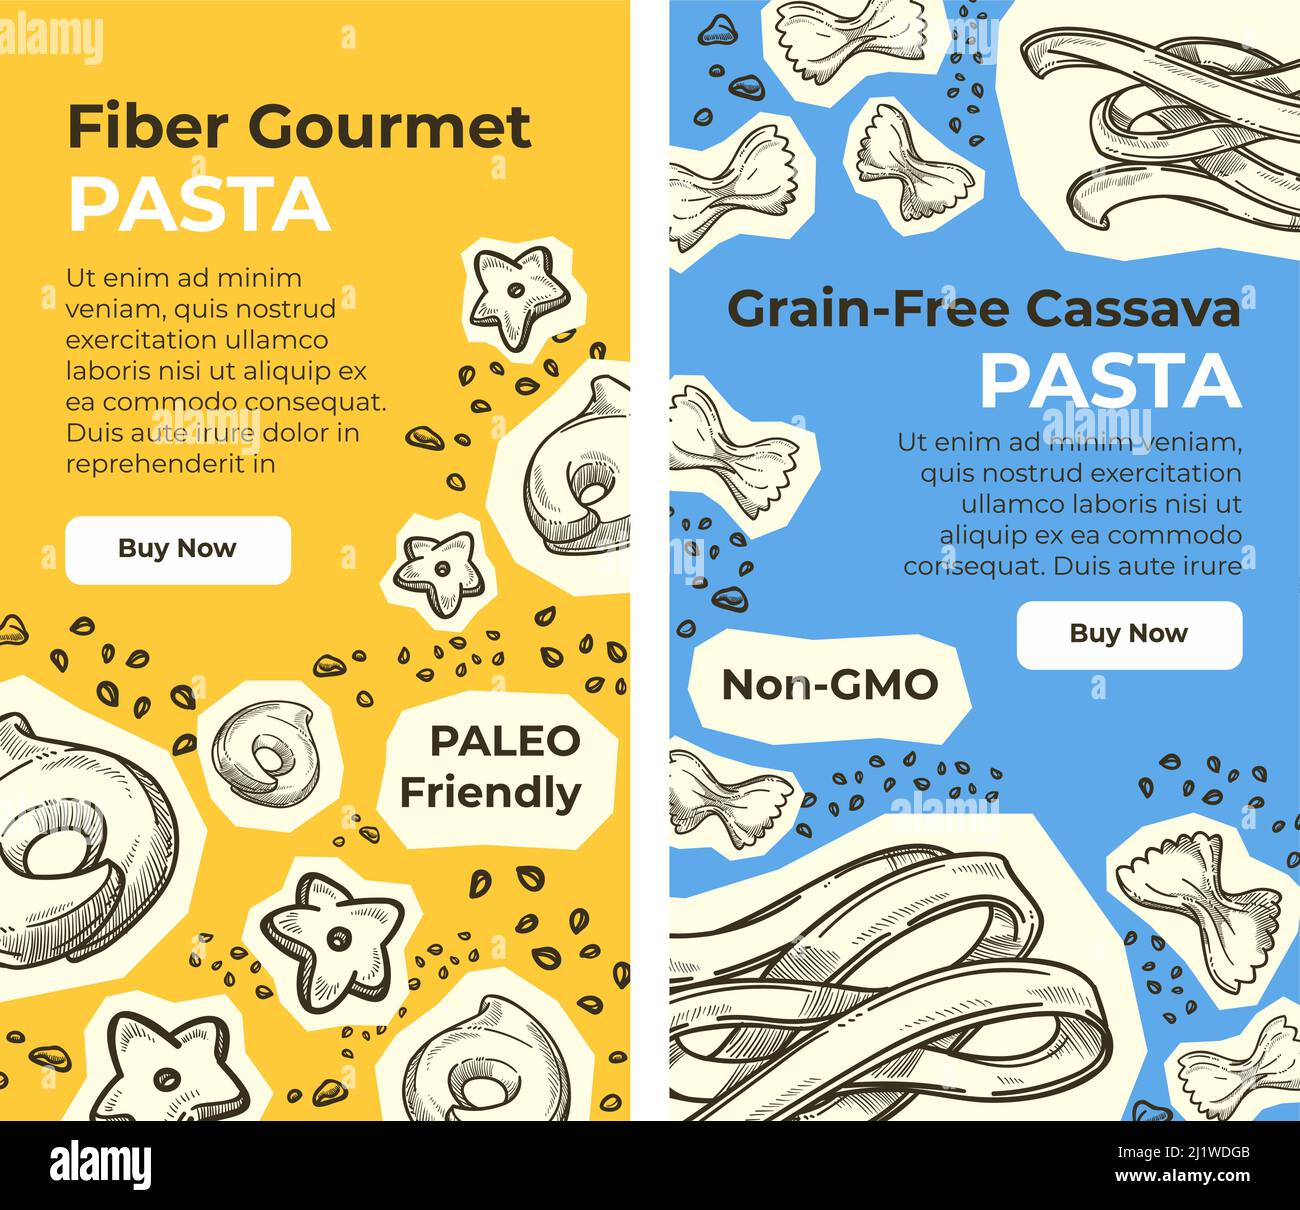 Pâtes alimentaires gastronomiques à base de fibres, site Internet de manioc sans grain Illustration de Vecteur